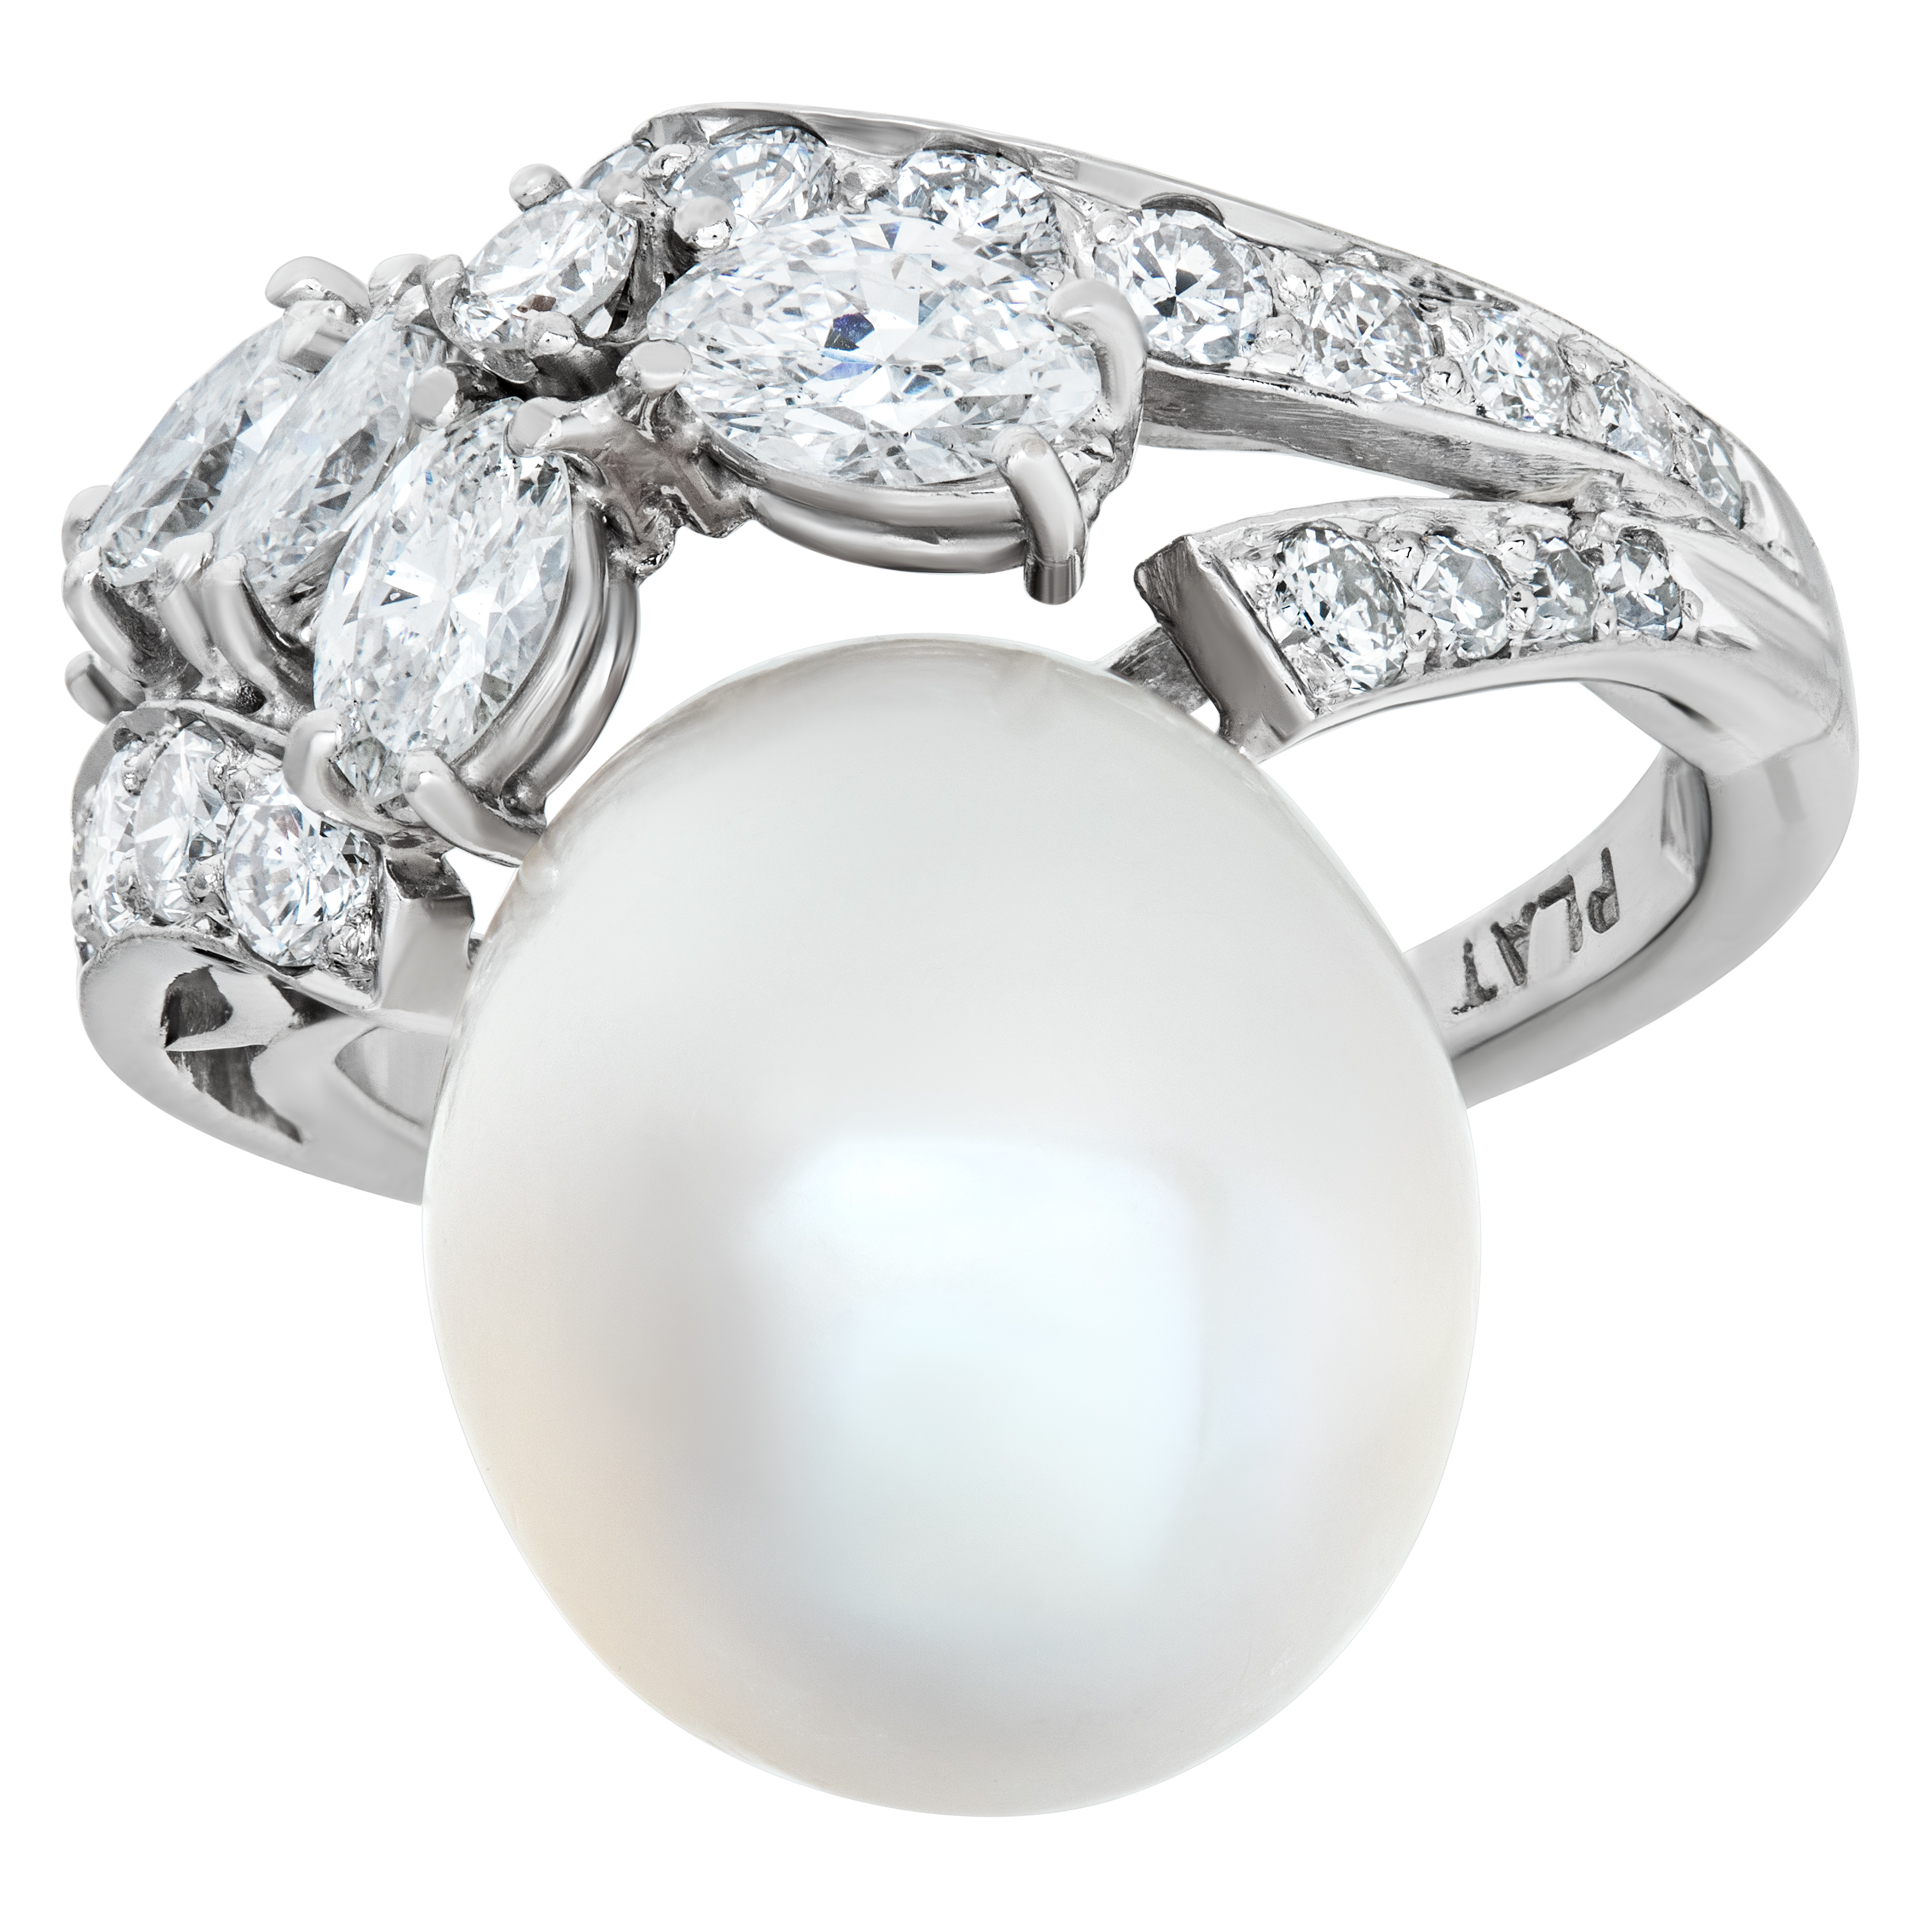 Pearl & diamond ring set in platinum